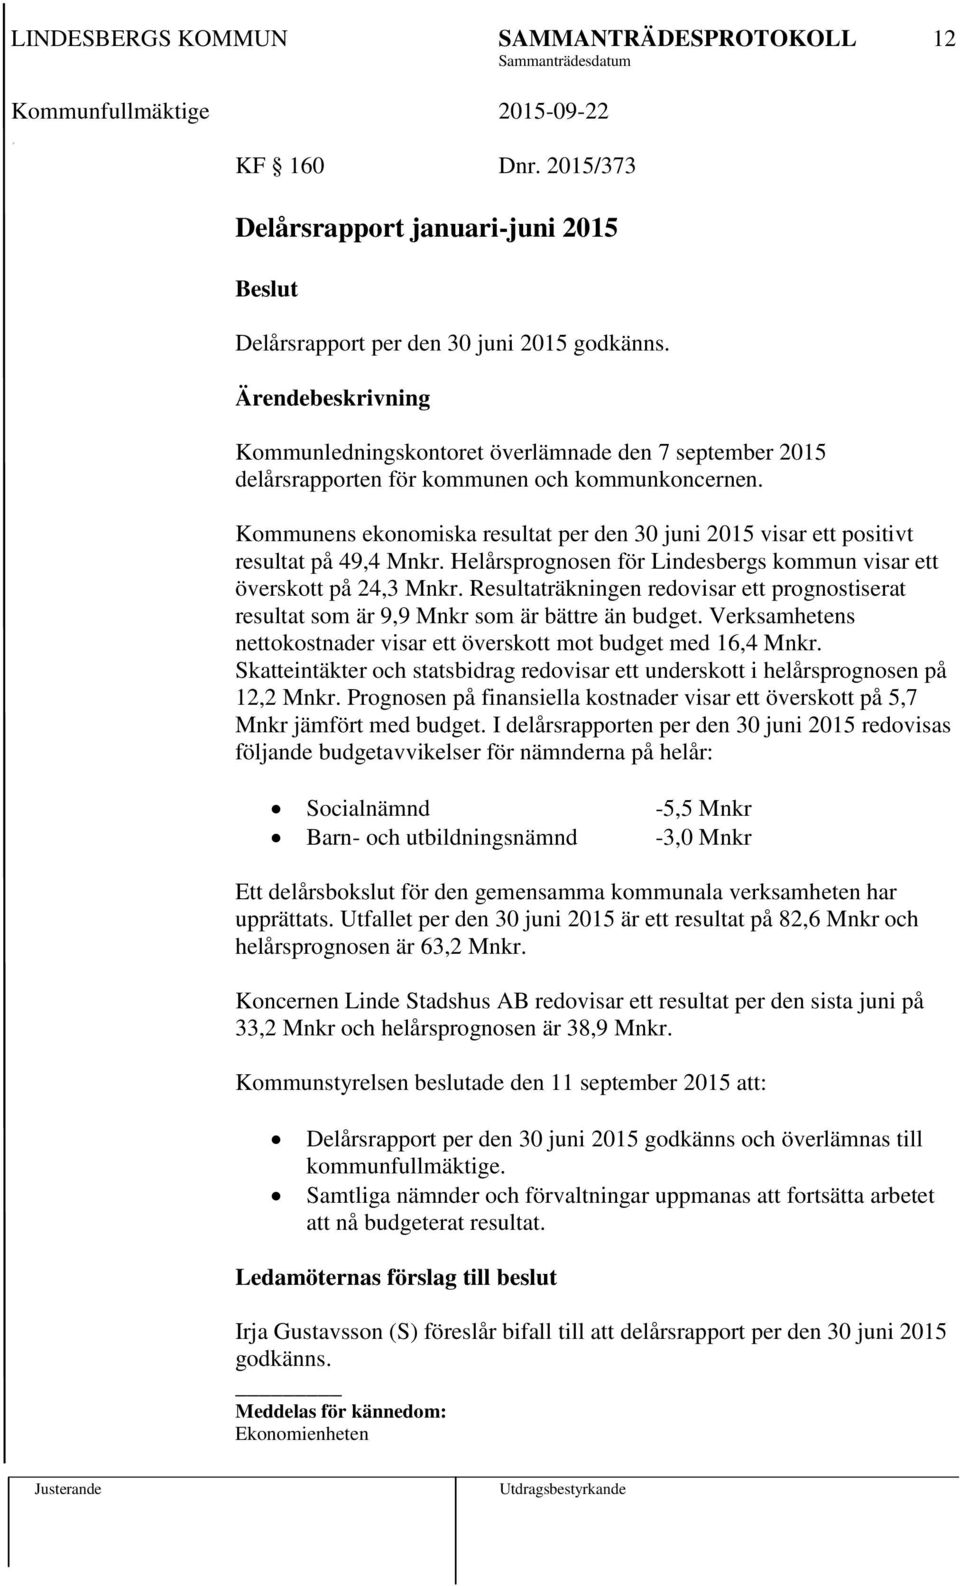 Helårsprognosen för Lindesbergs kommun visar ett överskott på 24,3 Mnkr. Resultaträkningen redovisar ett prognostiserat resultat som är 9,9 Mnkr som är bättre än budget.